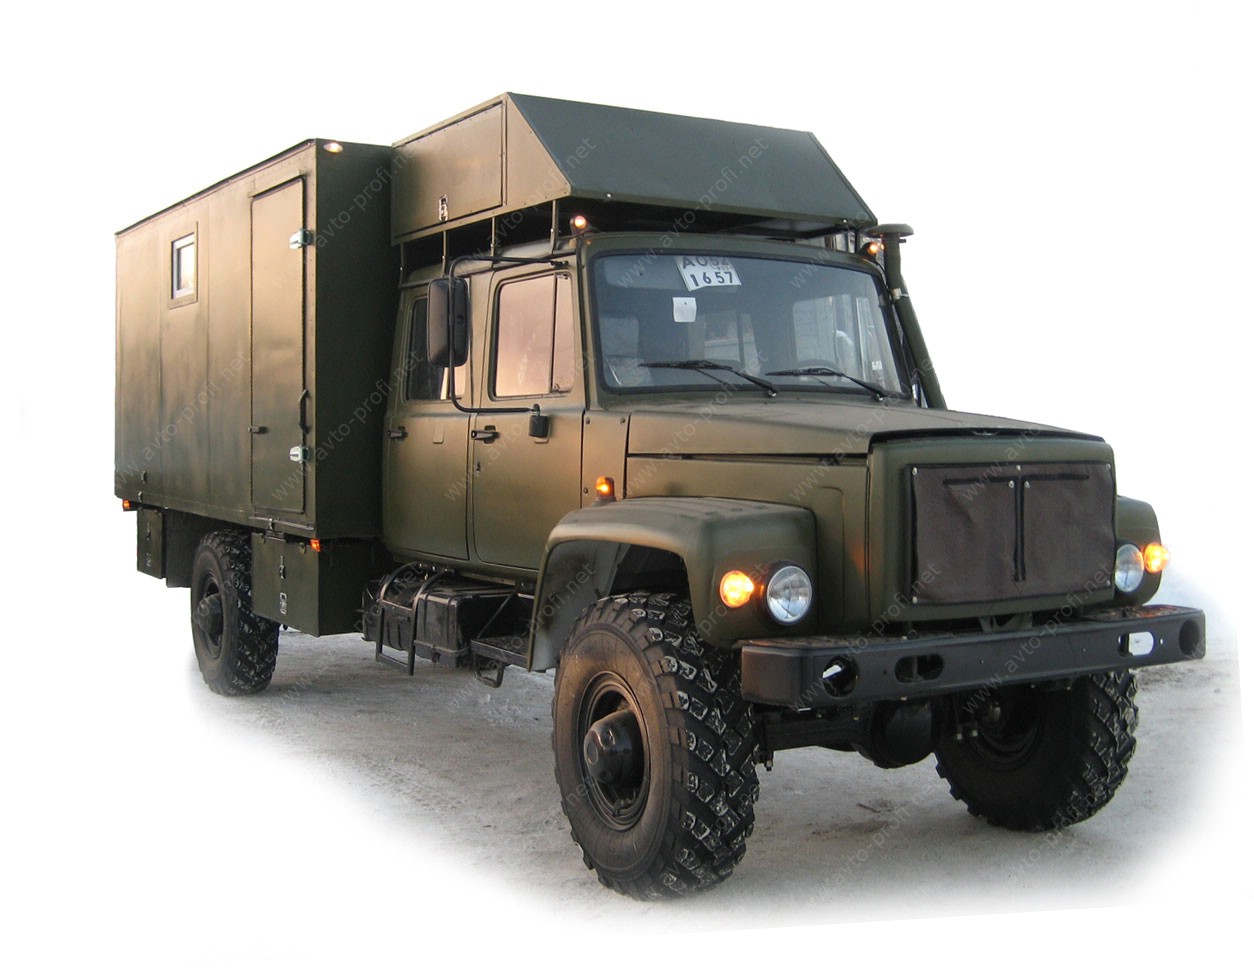 Выпущен автомобиль для активного отдыха, охоты и рыбалки на базе ГАЗ-33081 ЕГЕРЬ-2